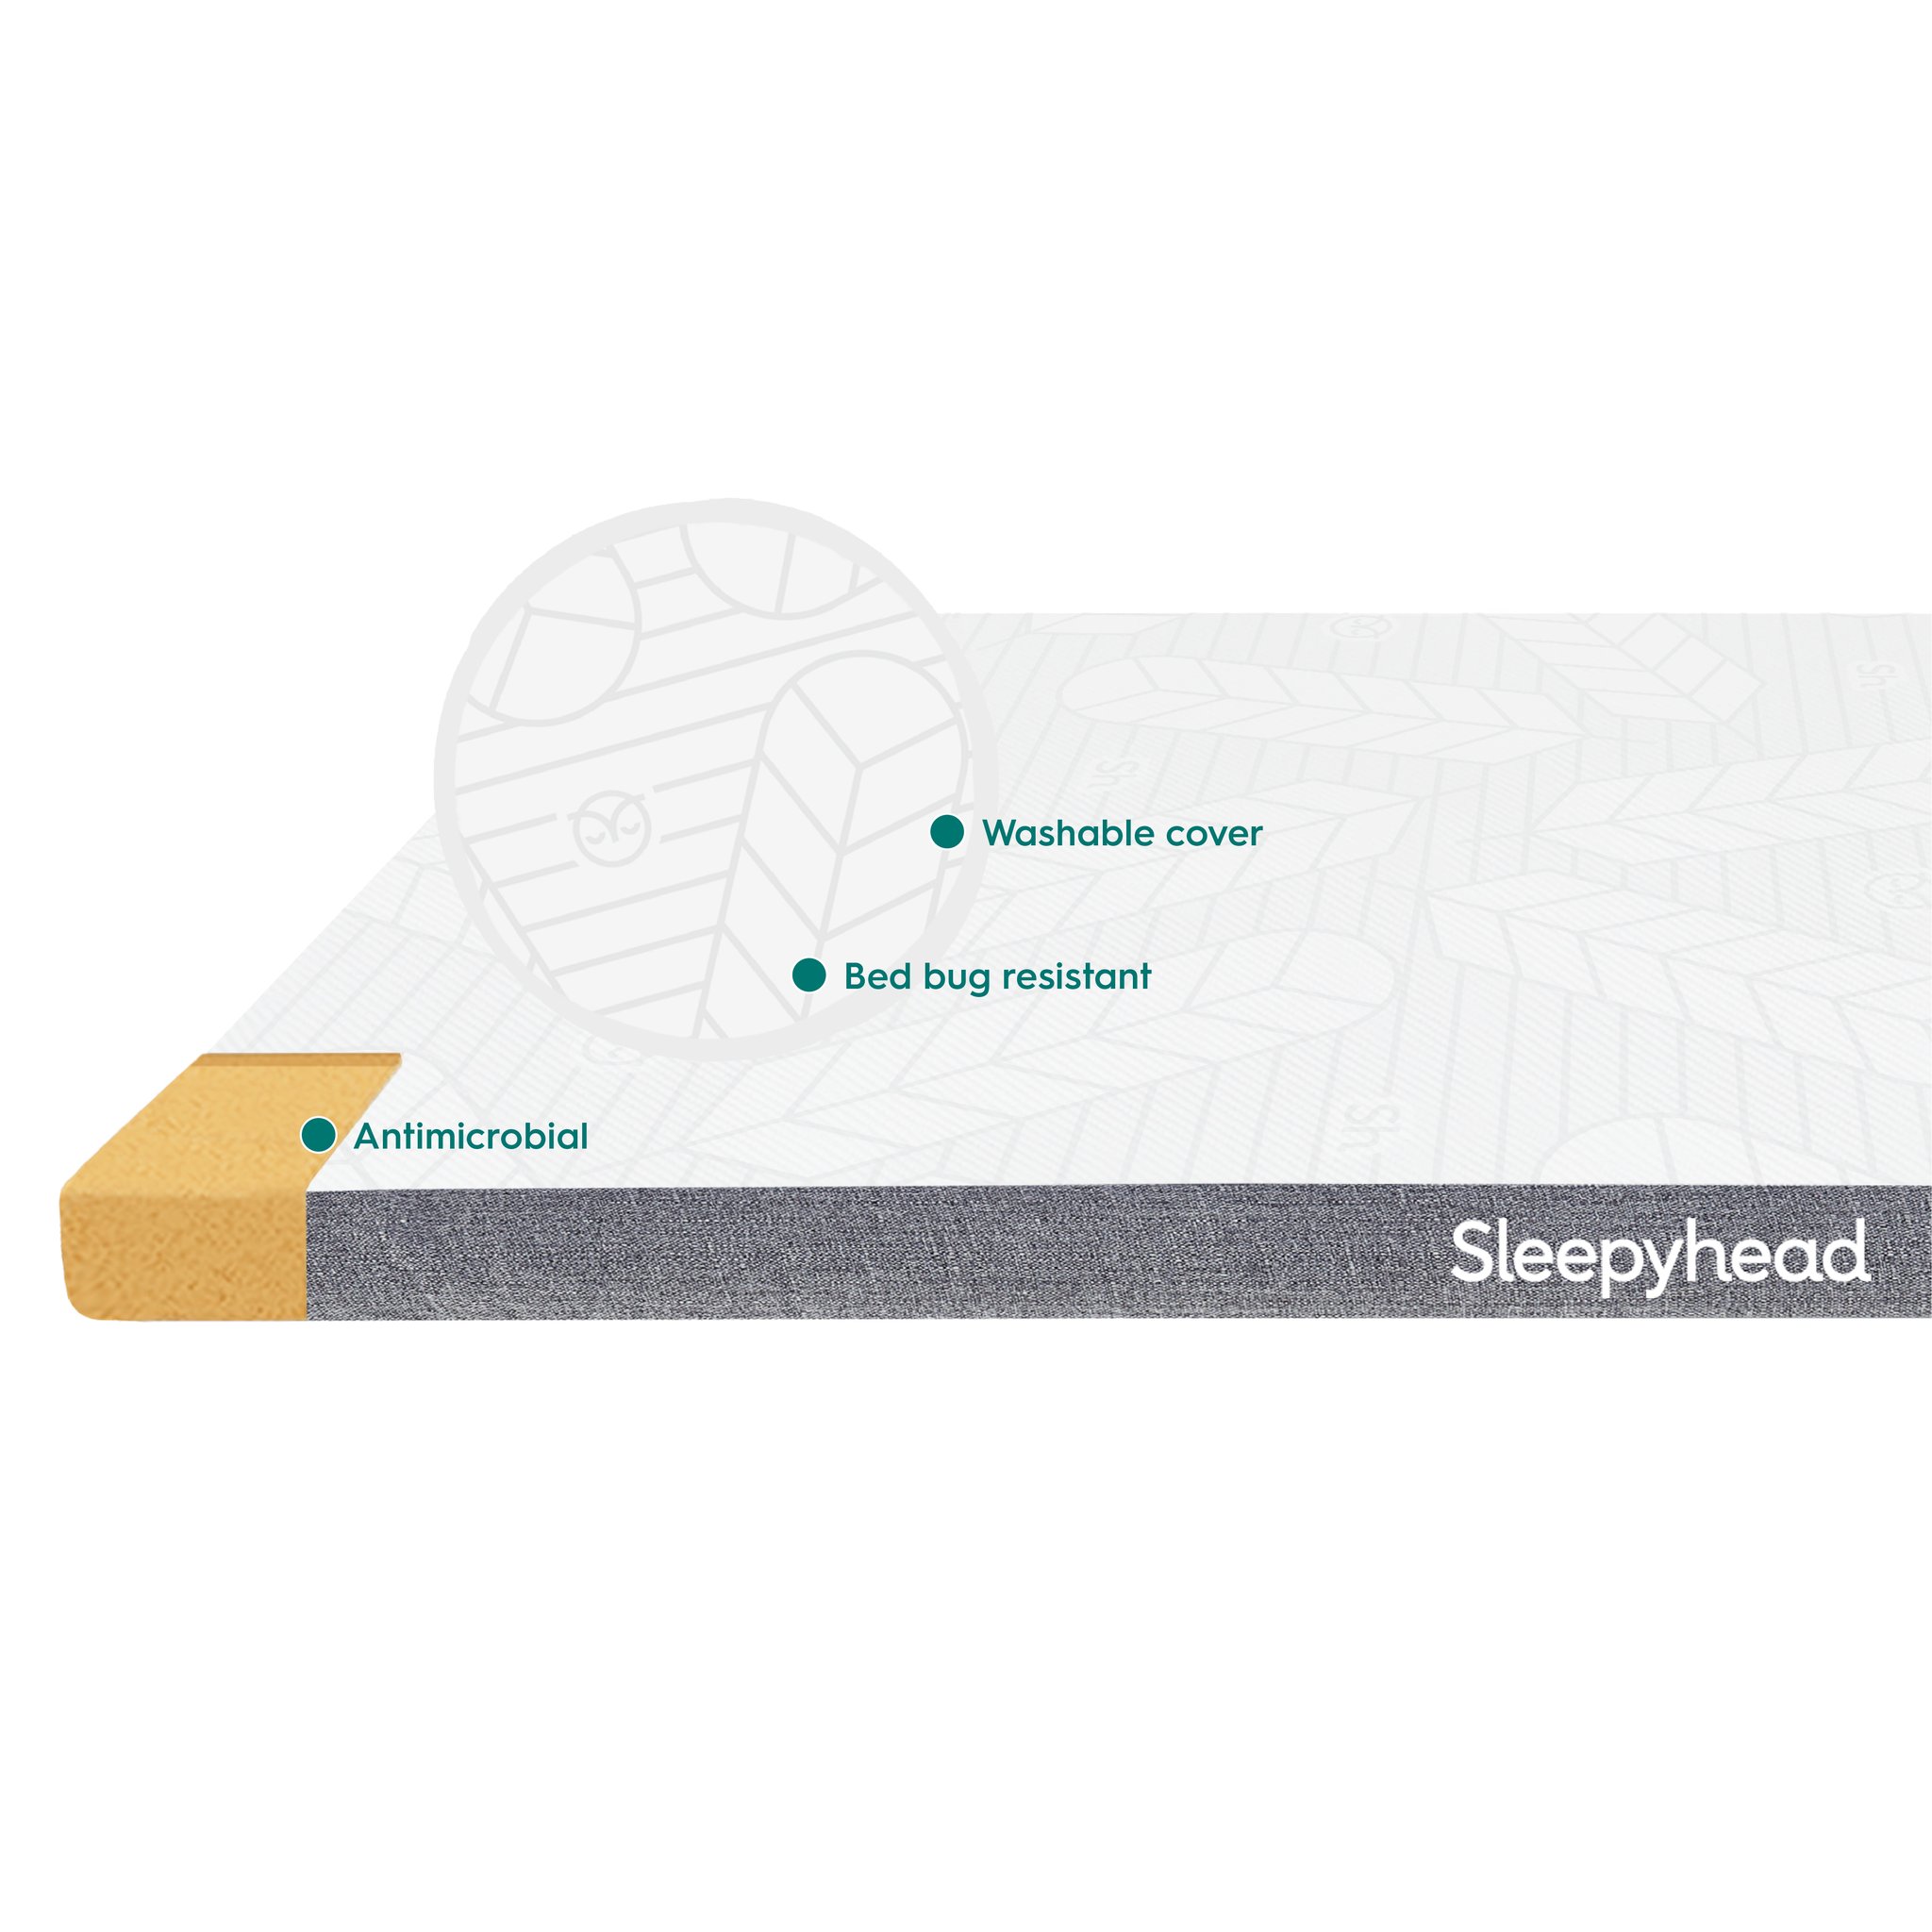 sleepyhead-mattress-topper-features